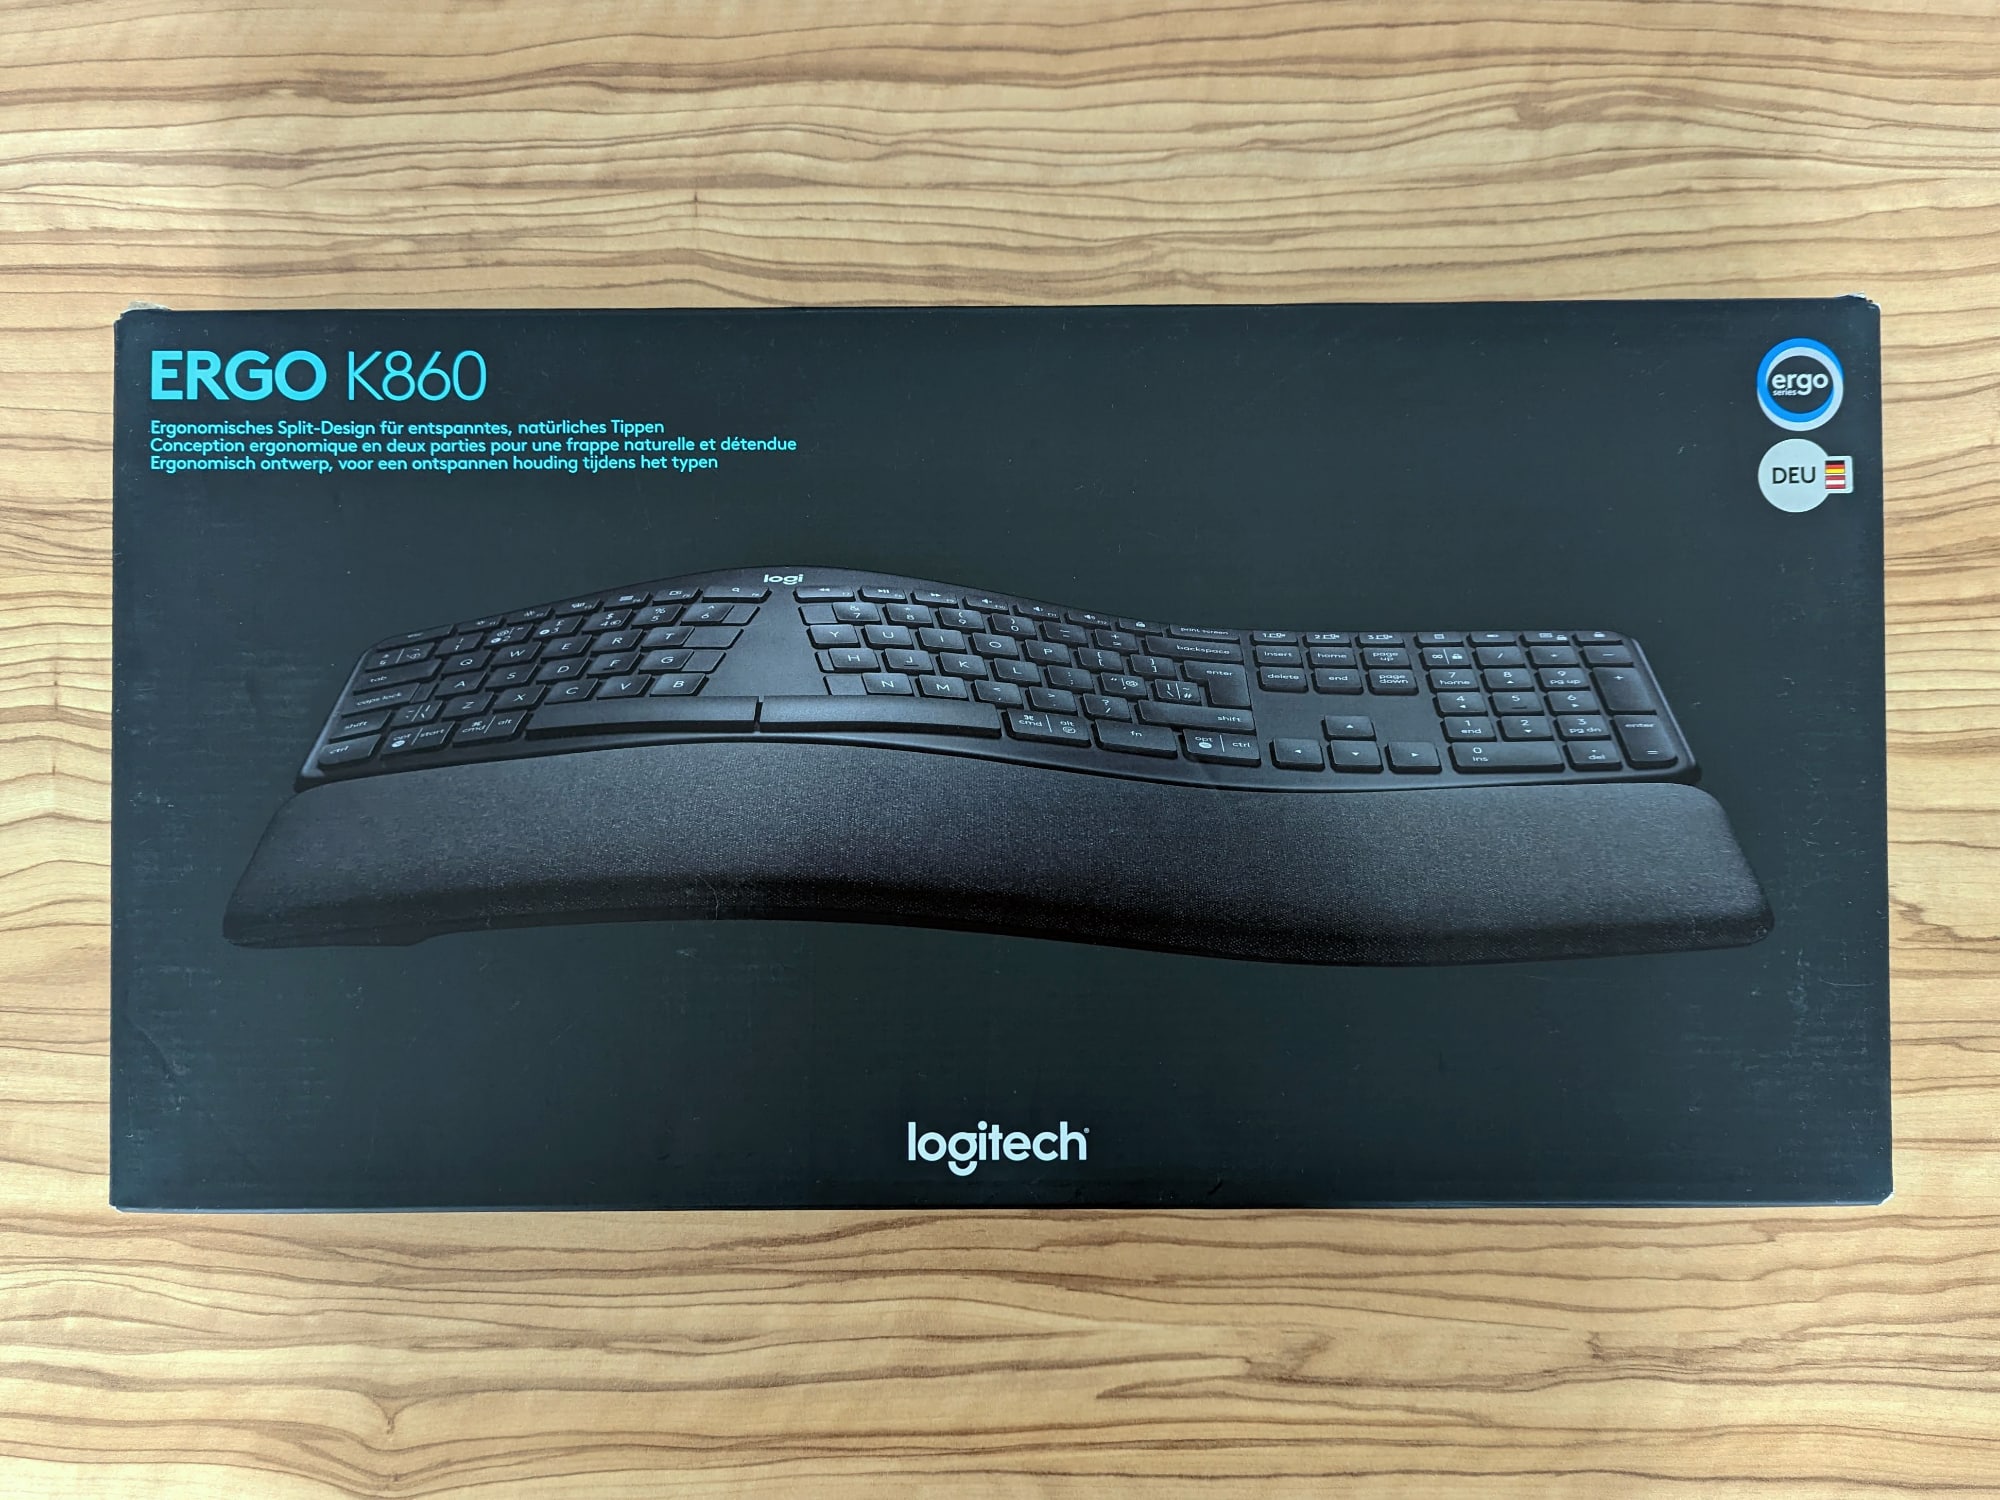 Logitech Ergo K860 review - ergonomic keyboard with split layout